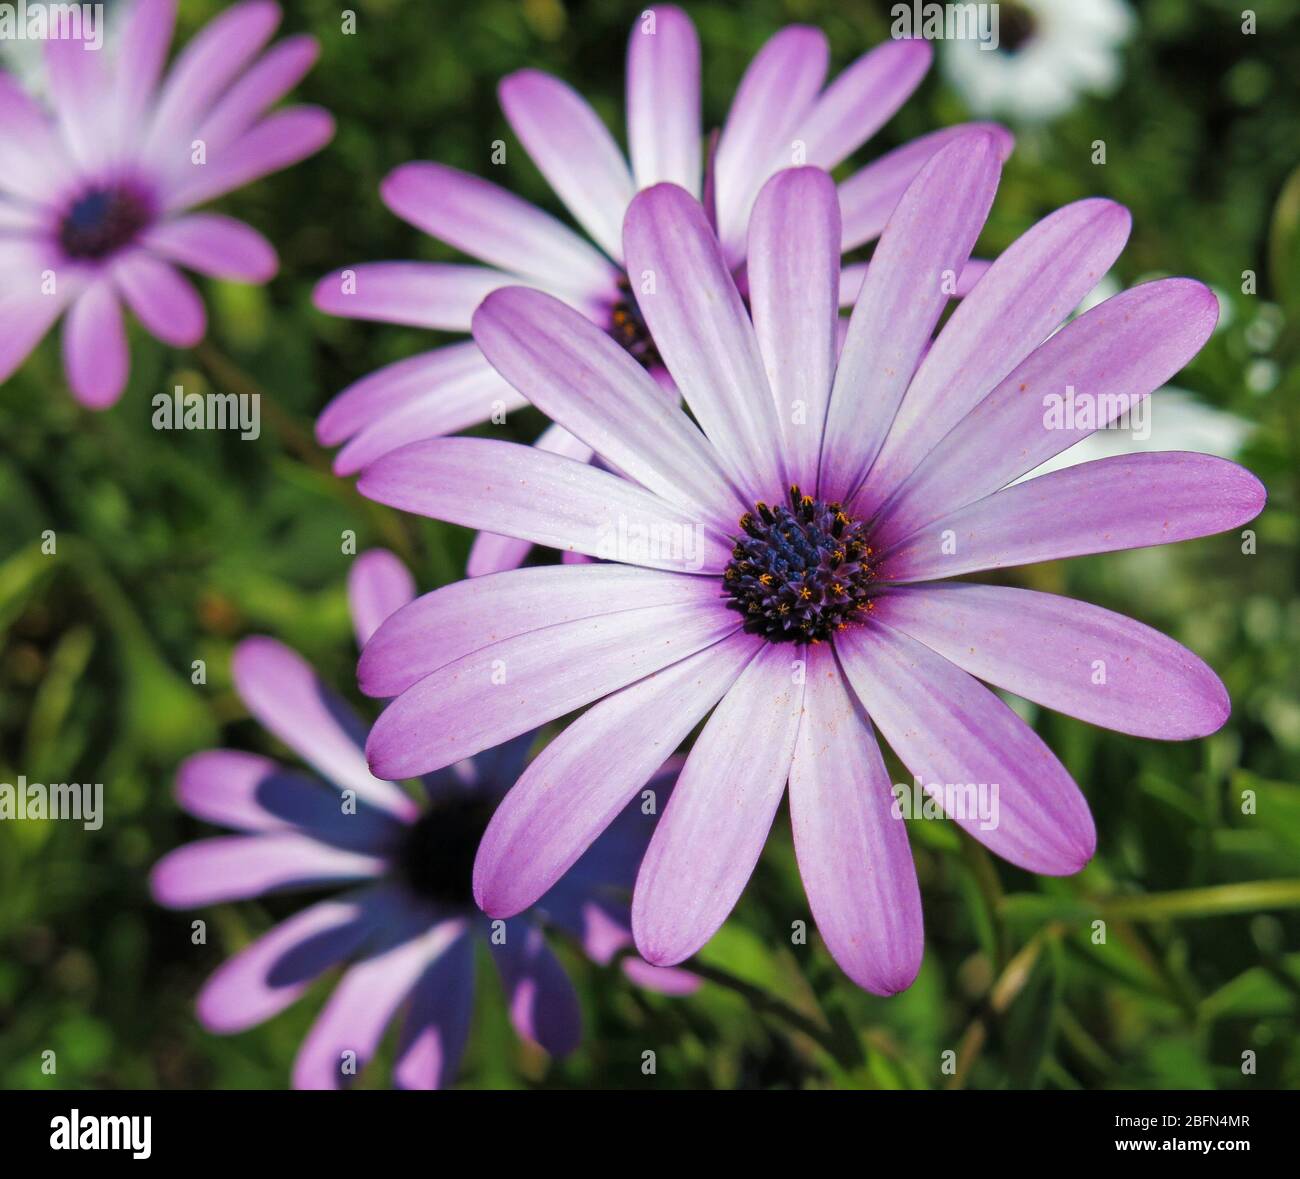 Les daisies violettes se rapprochés. Concept: Jardinage. Banque D'Images